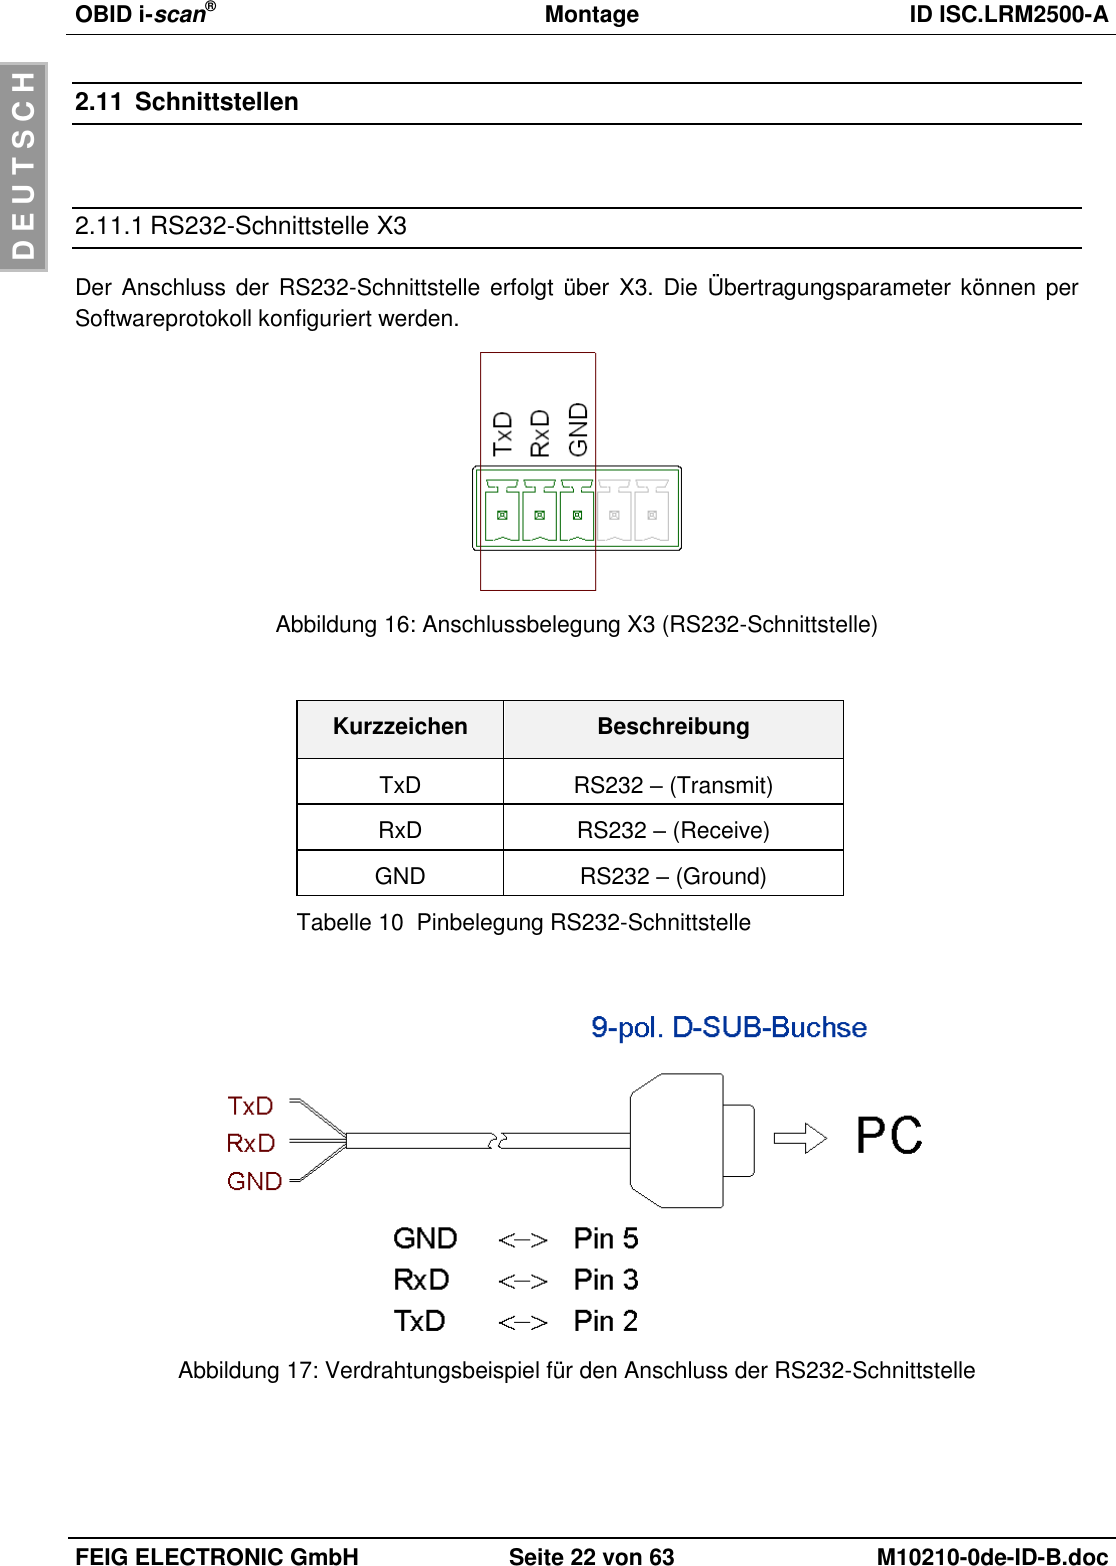 OBID i-scan®  Montage ID ISC.LRM2500-A  FEIG ELECTRONIC GmbH Seite 22 von 63 M10210-0de-ID-B.doc  D E U T S C H 2.11  Schnittstellen  2.11.1 RS232-Schnittstelle X3 Der Anschluss der RS232-Schnittstelle erfolgt über  X3. Die Übertragungsparameter können per Softwareprotokoll konfiguriert werden.  Abbildung 16: Anschlussbelegung X3 (RS232-Schnittstelle)  Kurzzeichen Beschreibung TxD RS232 – (Transmit) RxD RS232 – (Receive) GND RS232 – (Ground) Tabelle 10  Pinbelegung RS232-Schnittstelle   Abbildung 17: Verdrahtungsbeispiel für den Anschluss der RS232-Schnittstelle  